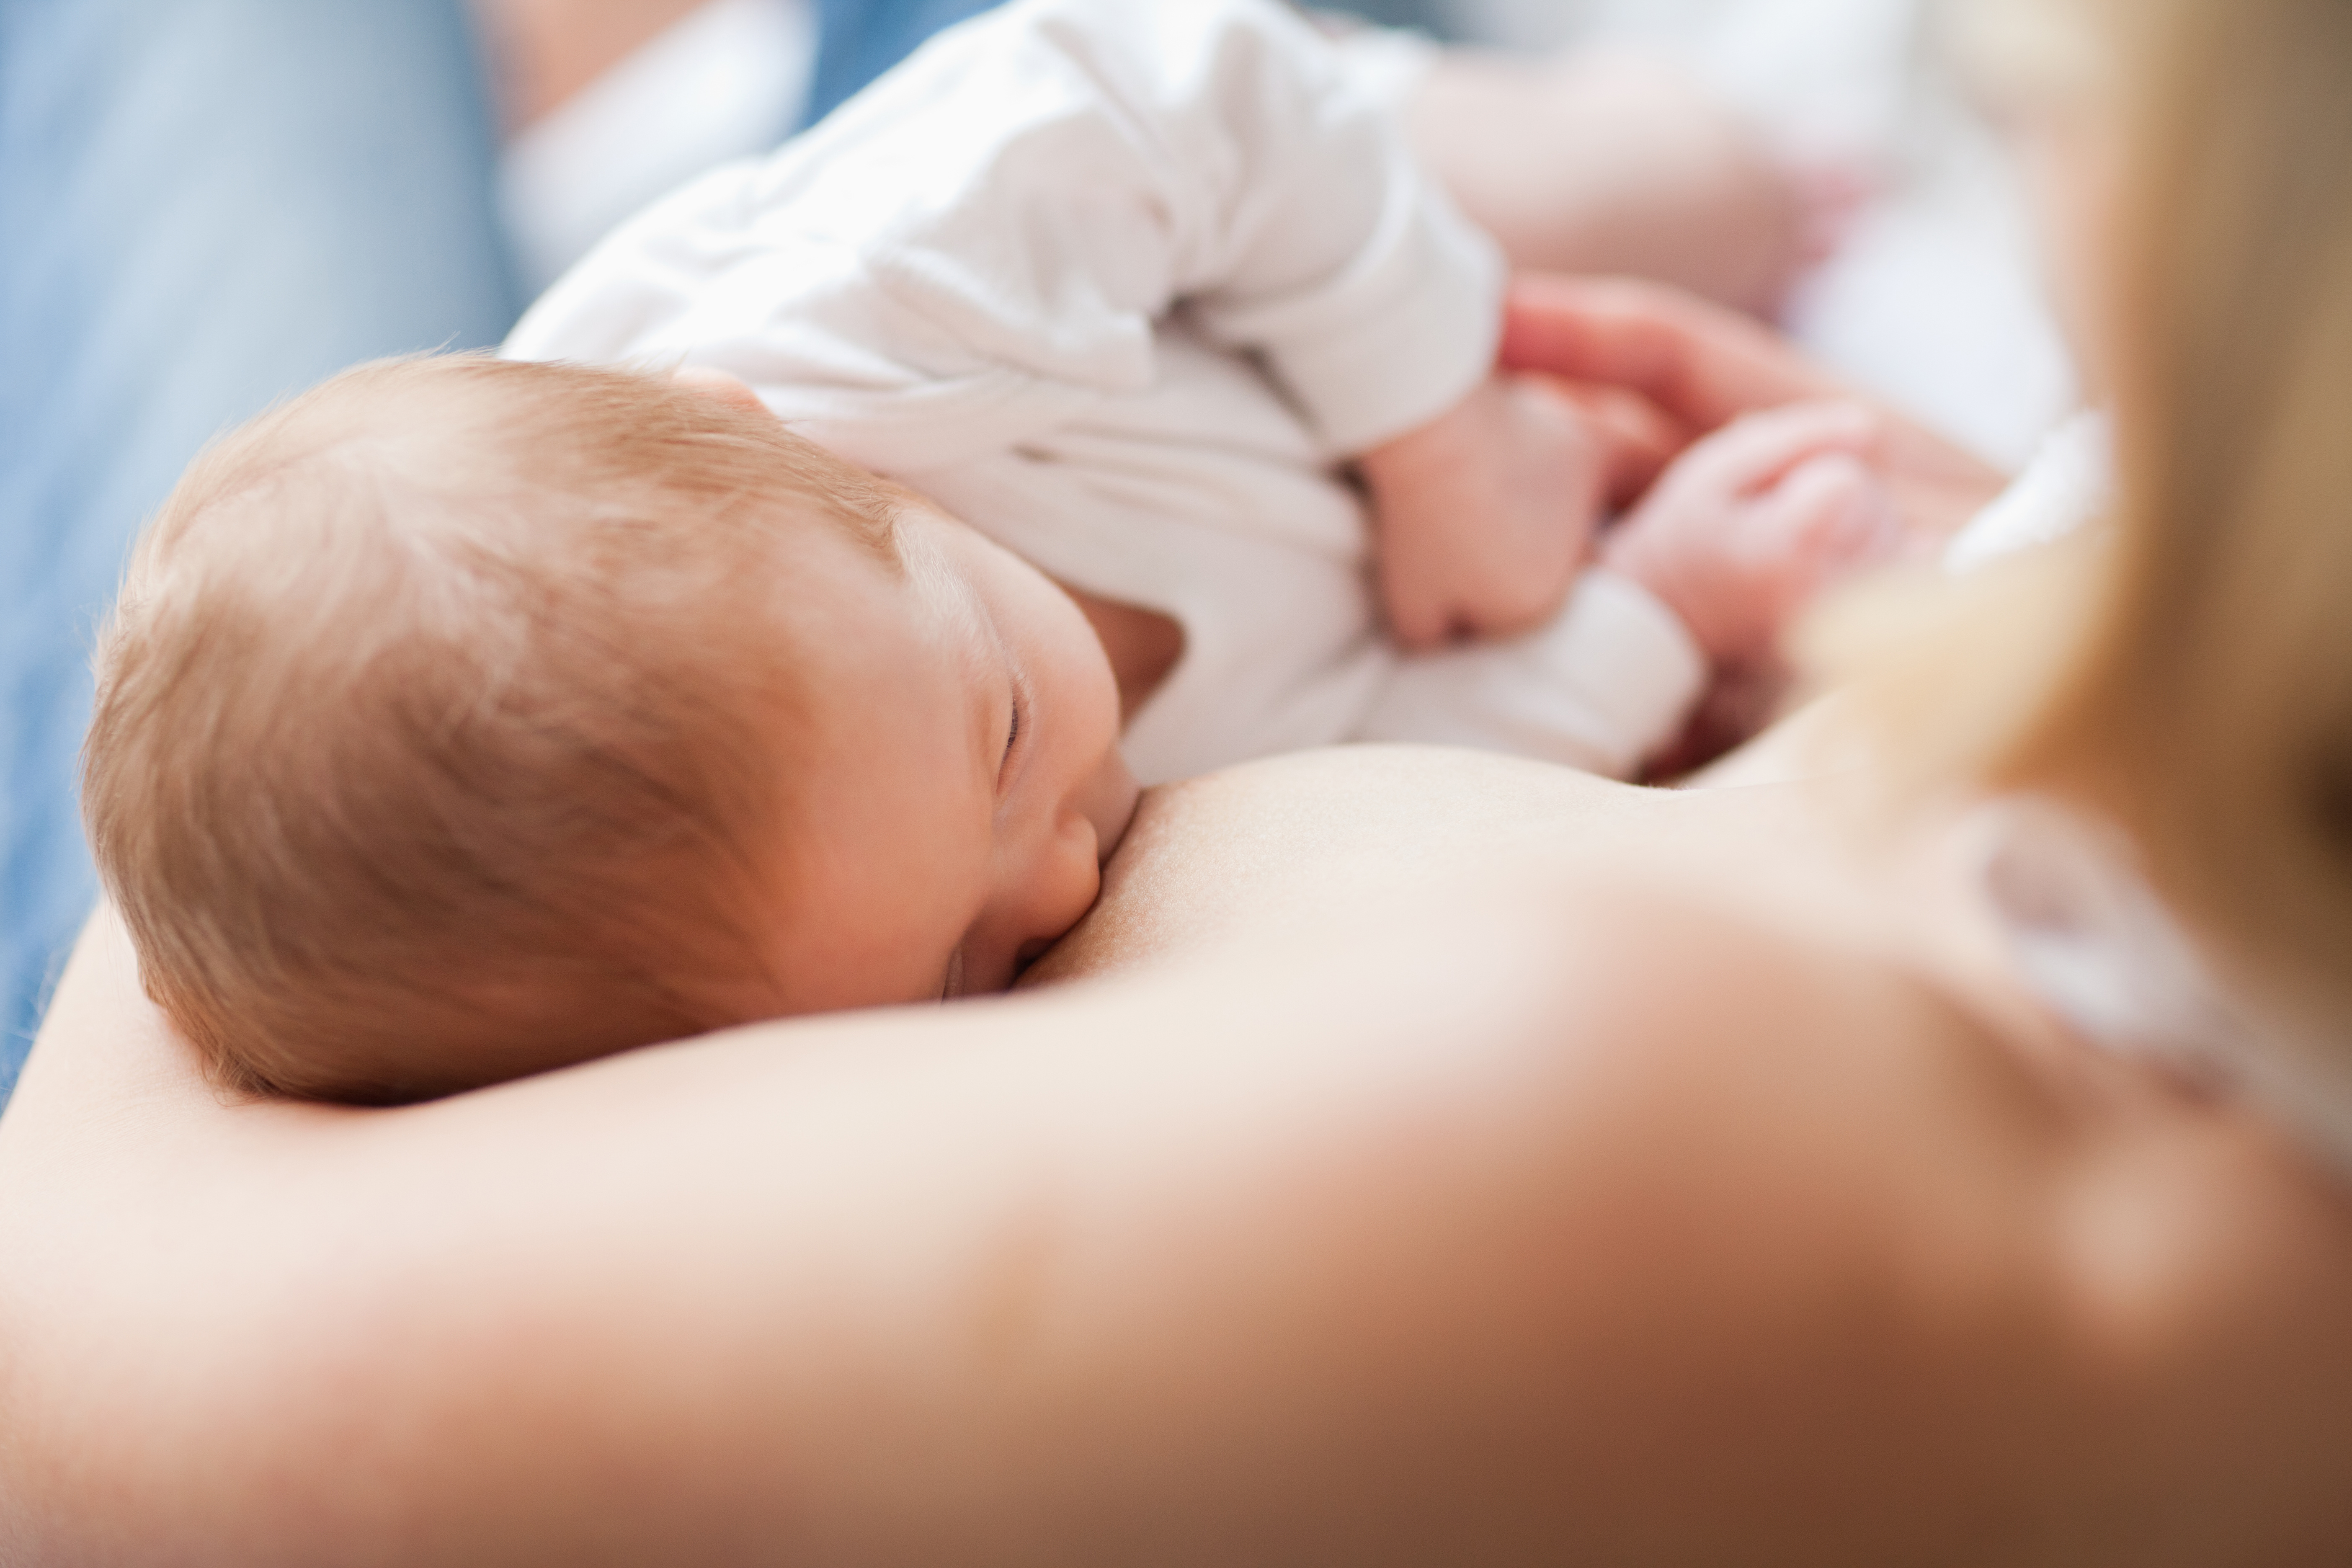 Différents facteurs maternels, dont le lait maternel, affectent le développement physique et neurologique du bébé